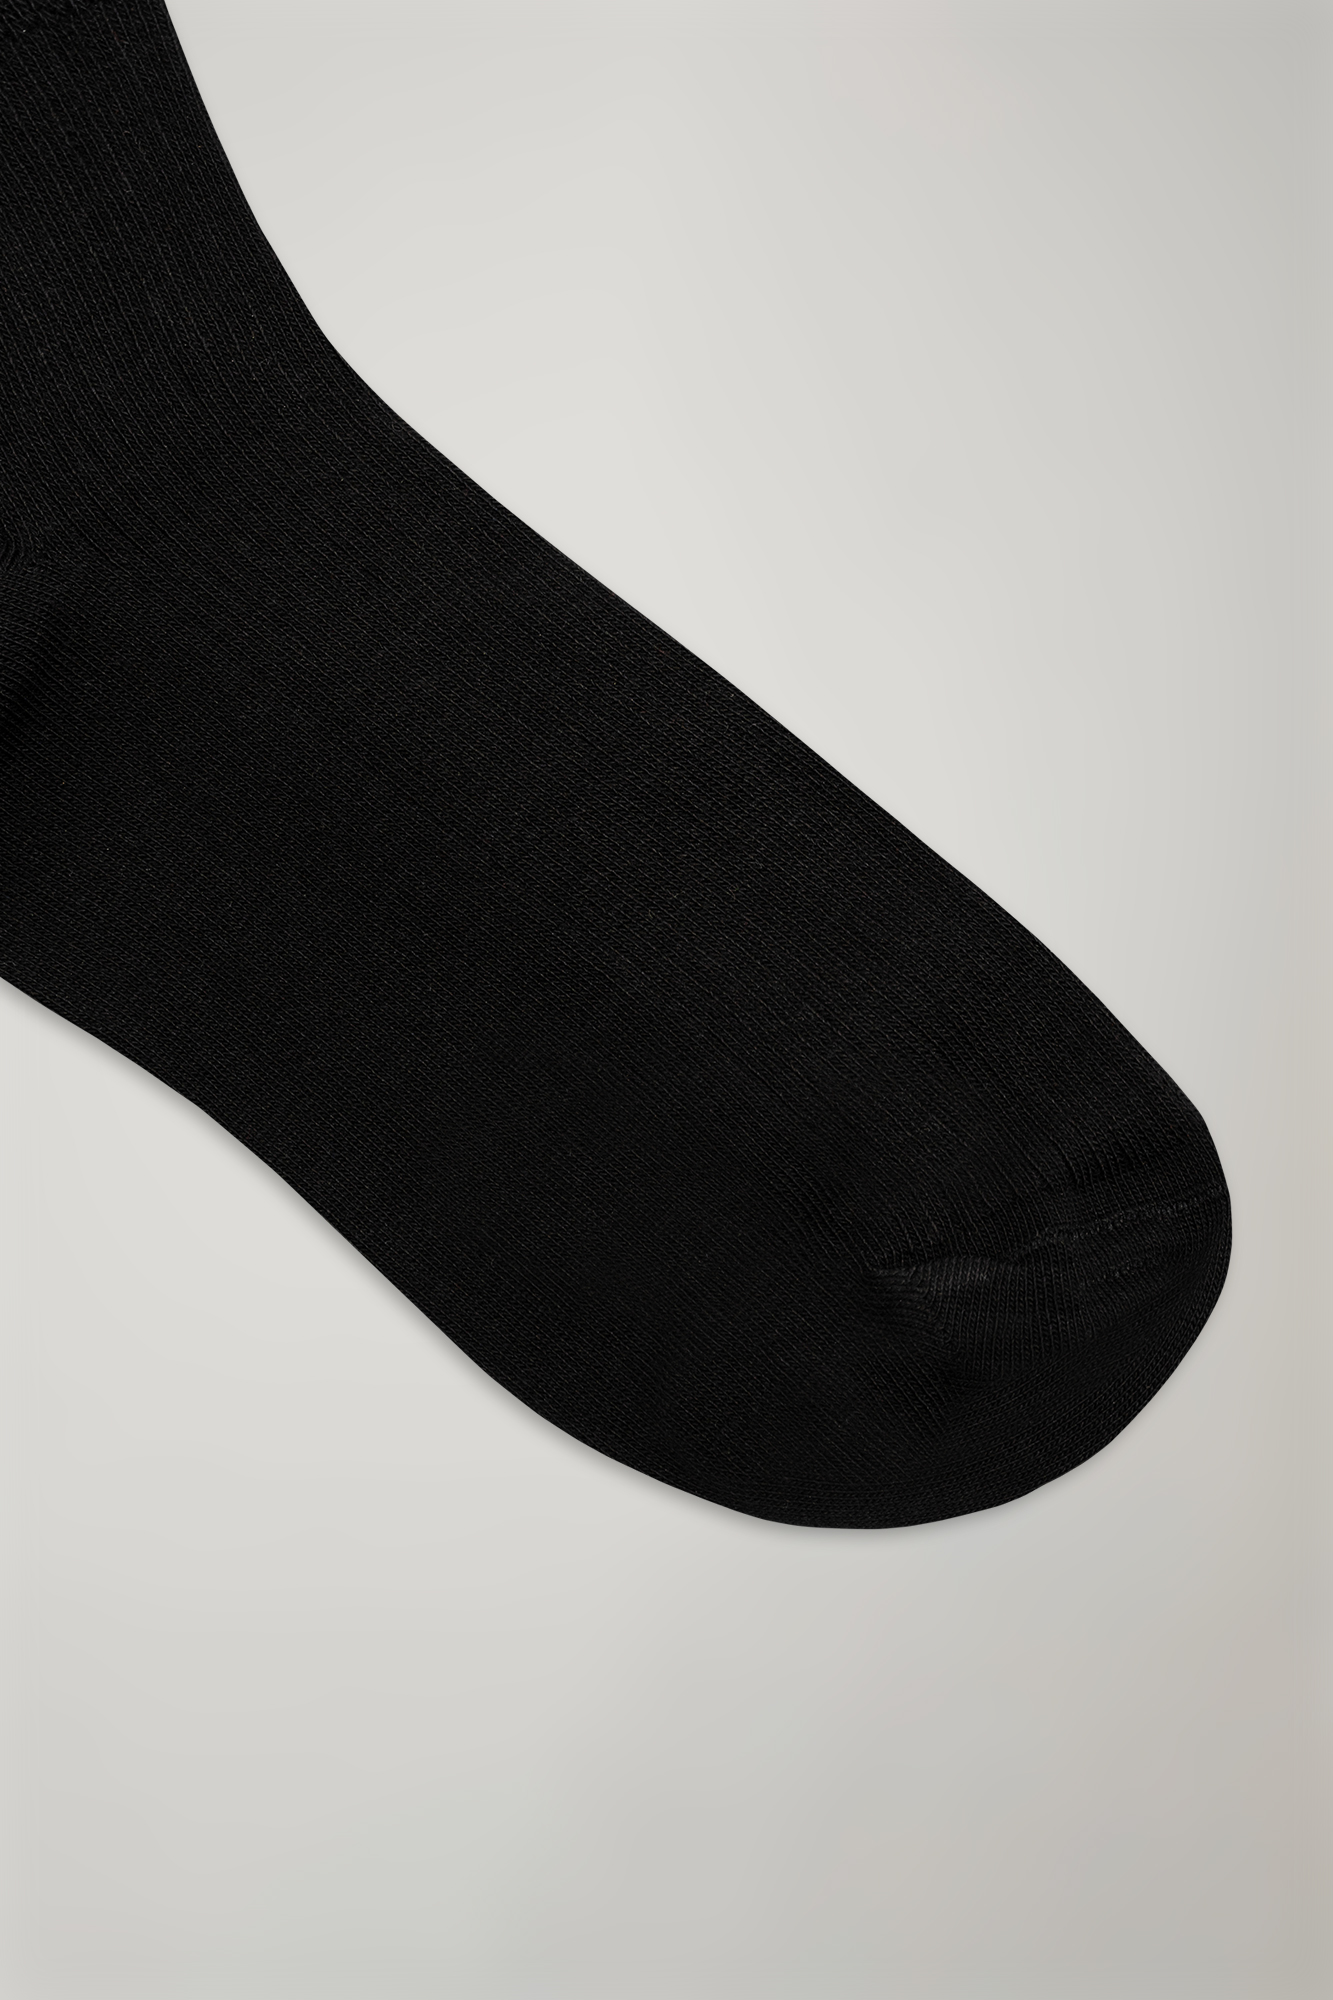 Socken aus Baumwollgemisch mit niedrigem Schnitt, einfarbig, Rippenstrick made in italy image number null